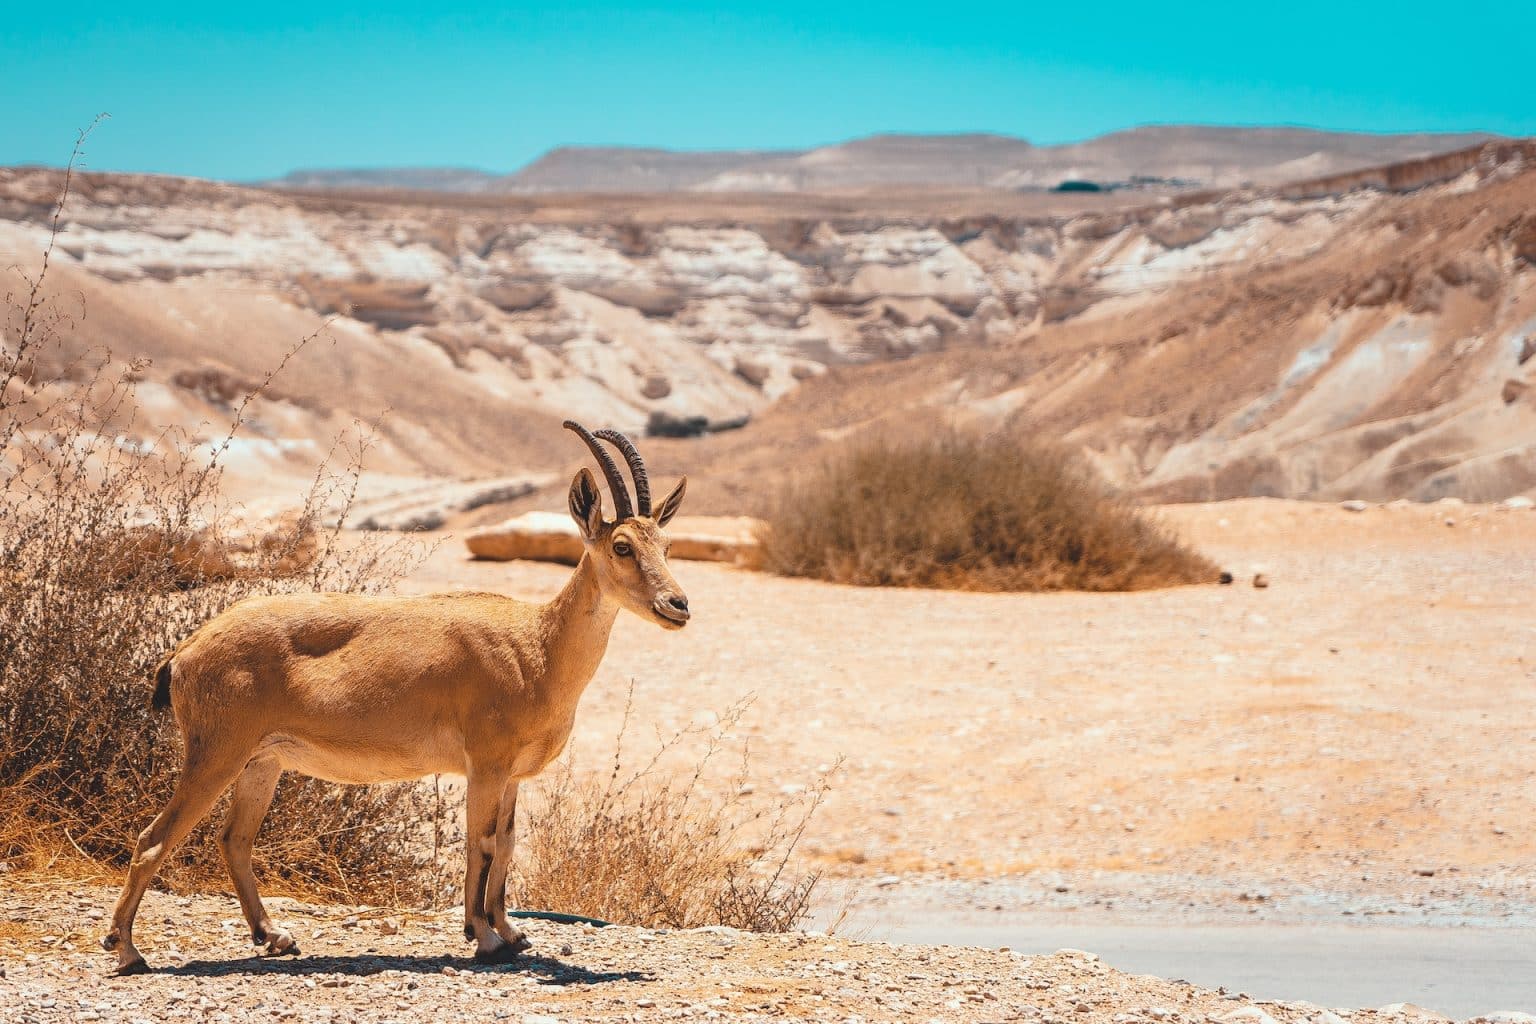 An Ibex in the Israeli desert